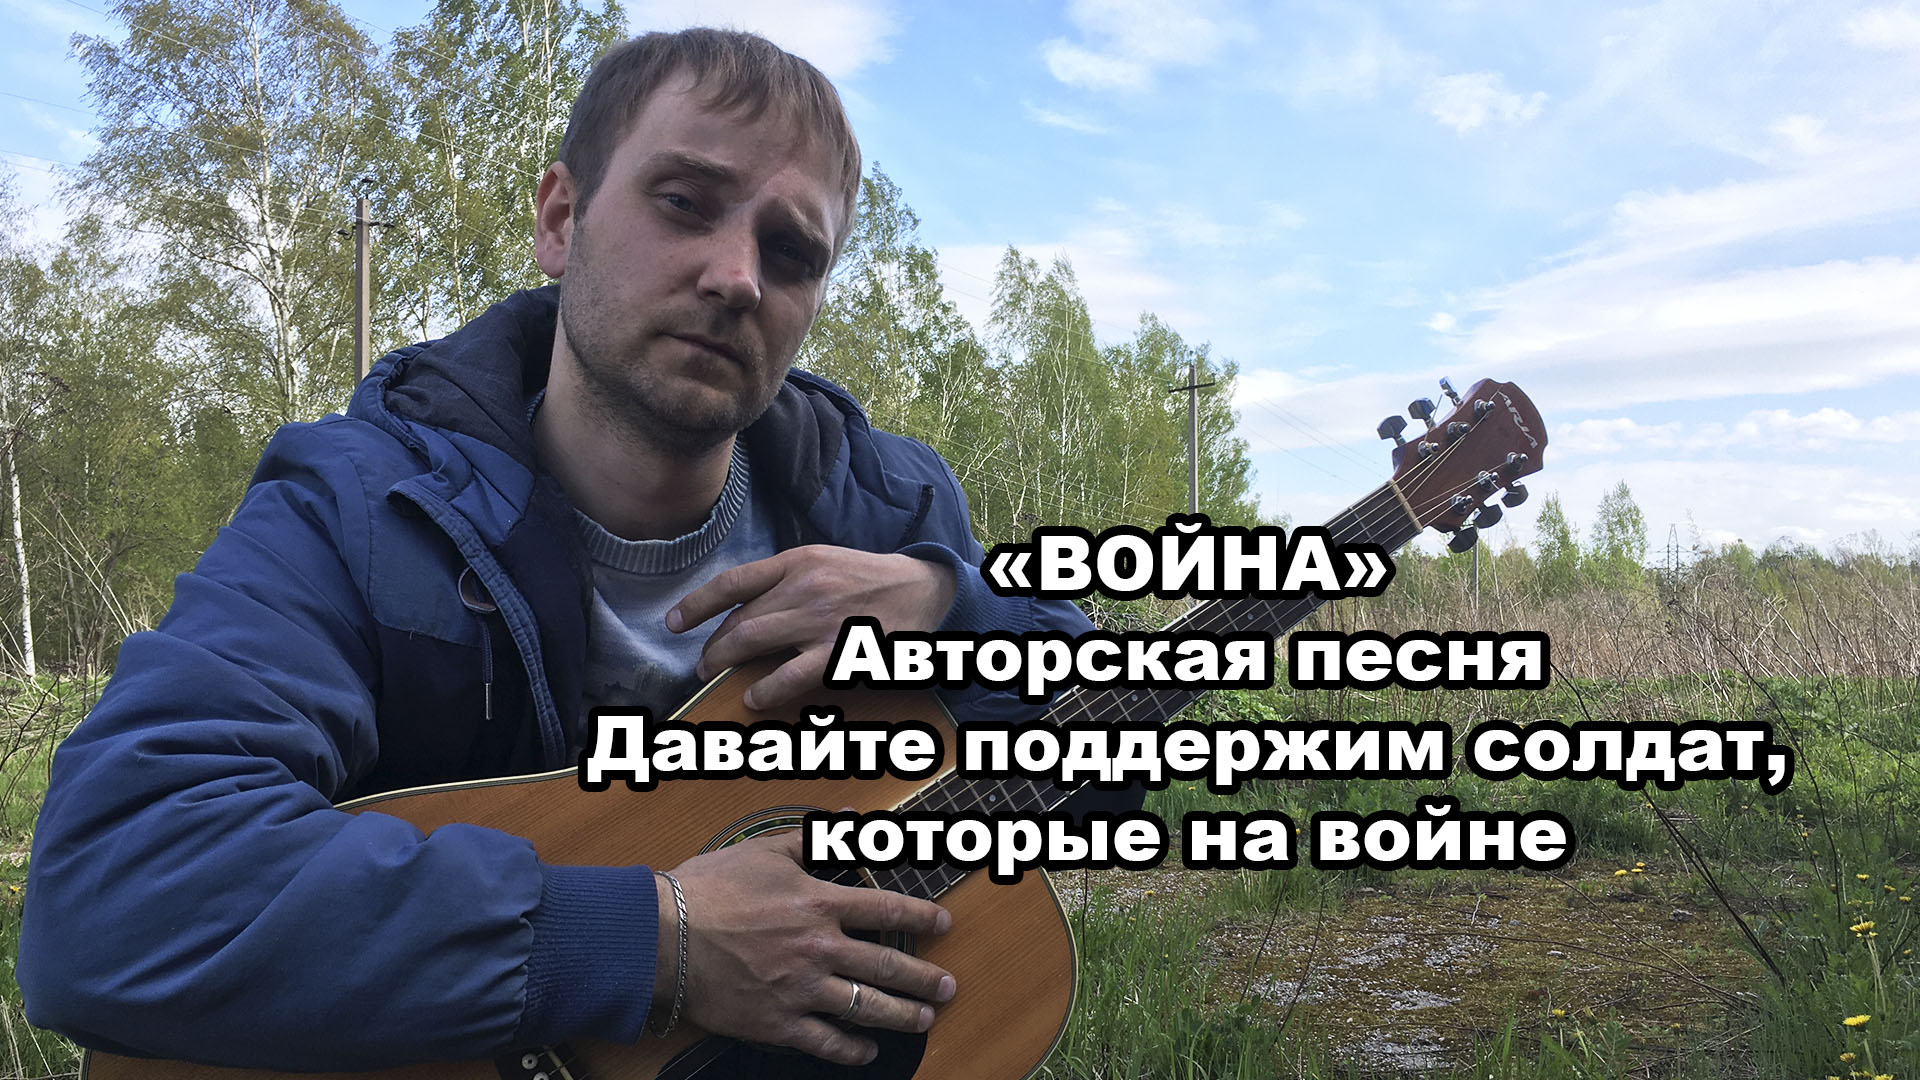 "Война" - Авторская песня / Давайте вместе поддержим ребят, что на войне на Украине